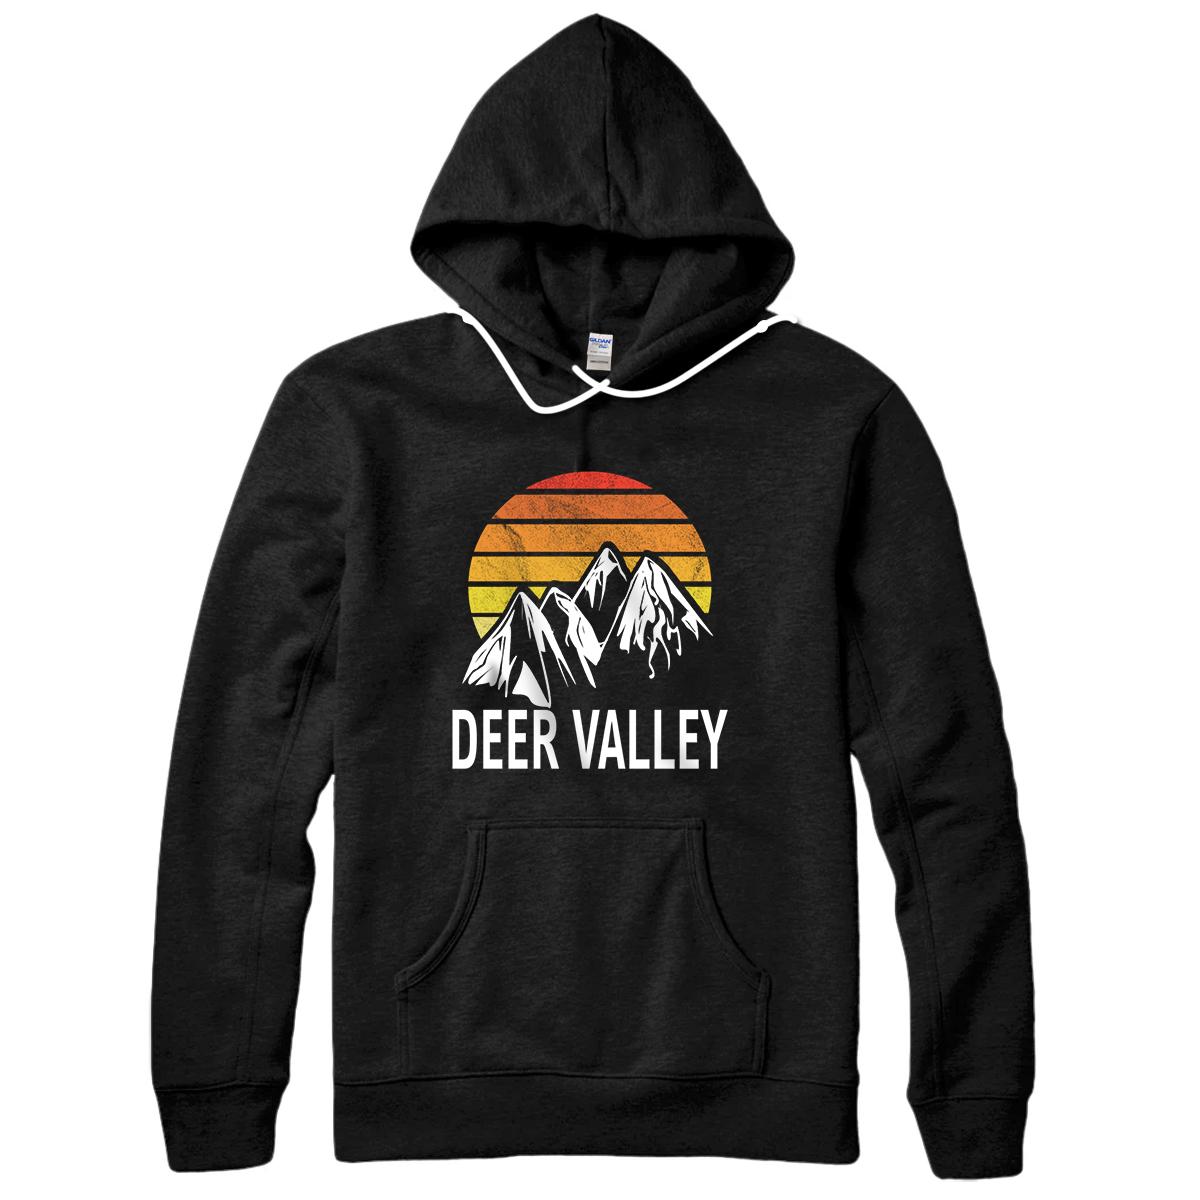 Personalized Deer Valley Park City Utah USA Ski Resort Snowboarding Pullover Hoodie